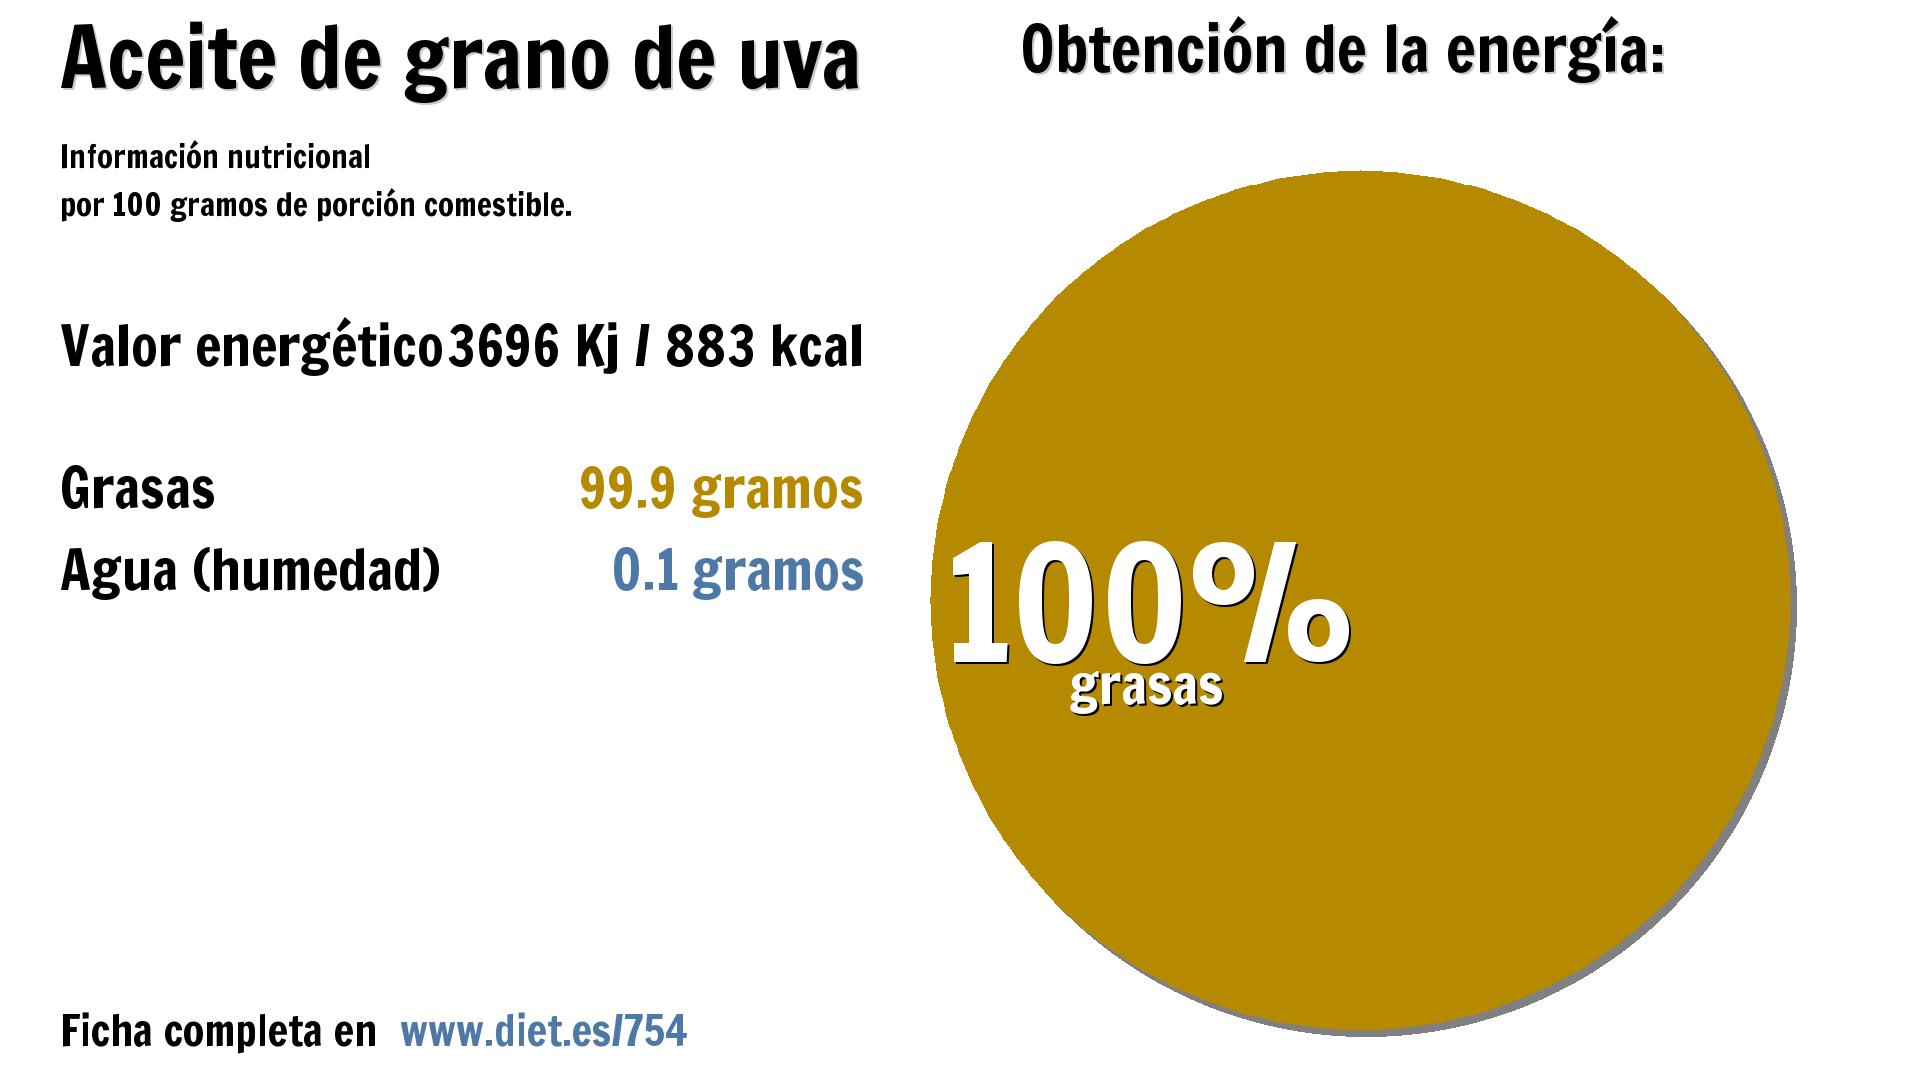 Aceite de grano de uva: energía 3696 Kj y grasas 100 g.